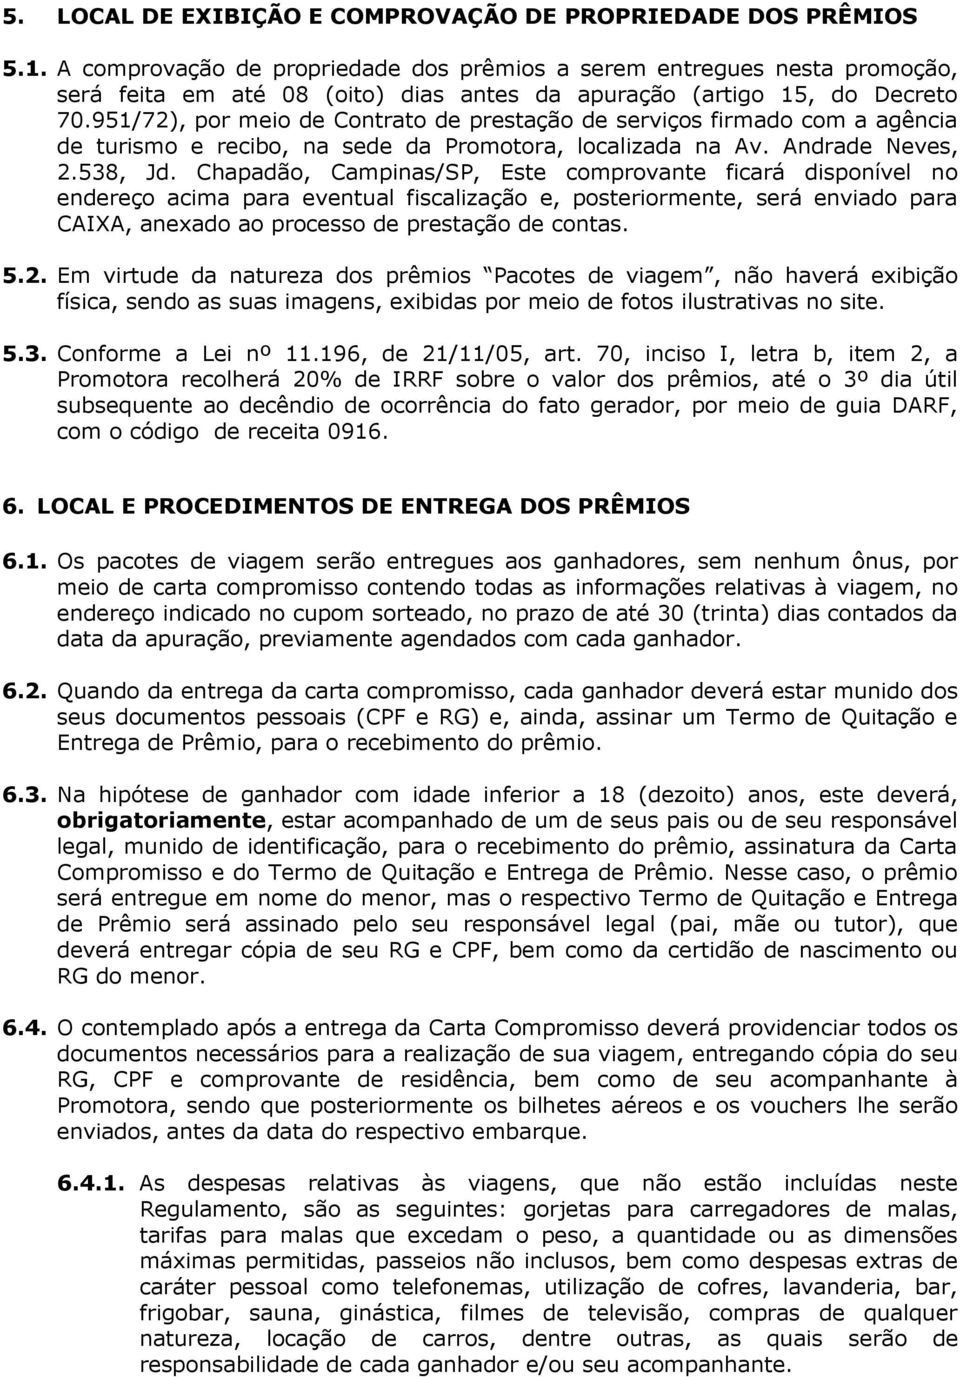 951/72), por meio de Contrato de prestação de serviços firmado com a agência de turismo e recibo, na sede da Promotora, localizada na Av. Andrade Neves, 2.538, Jd.